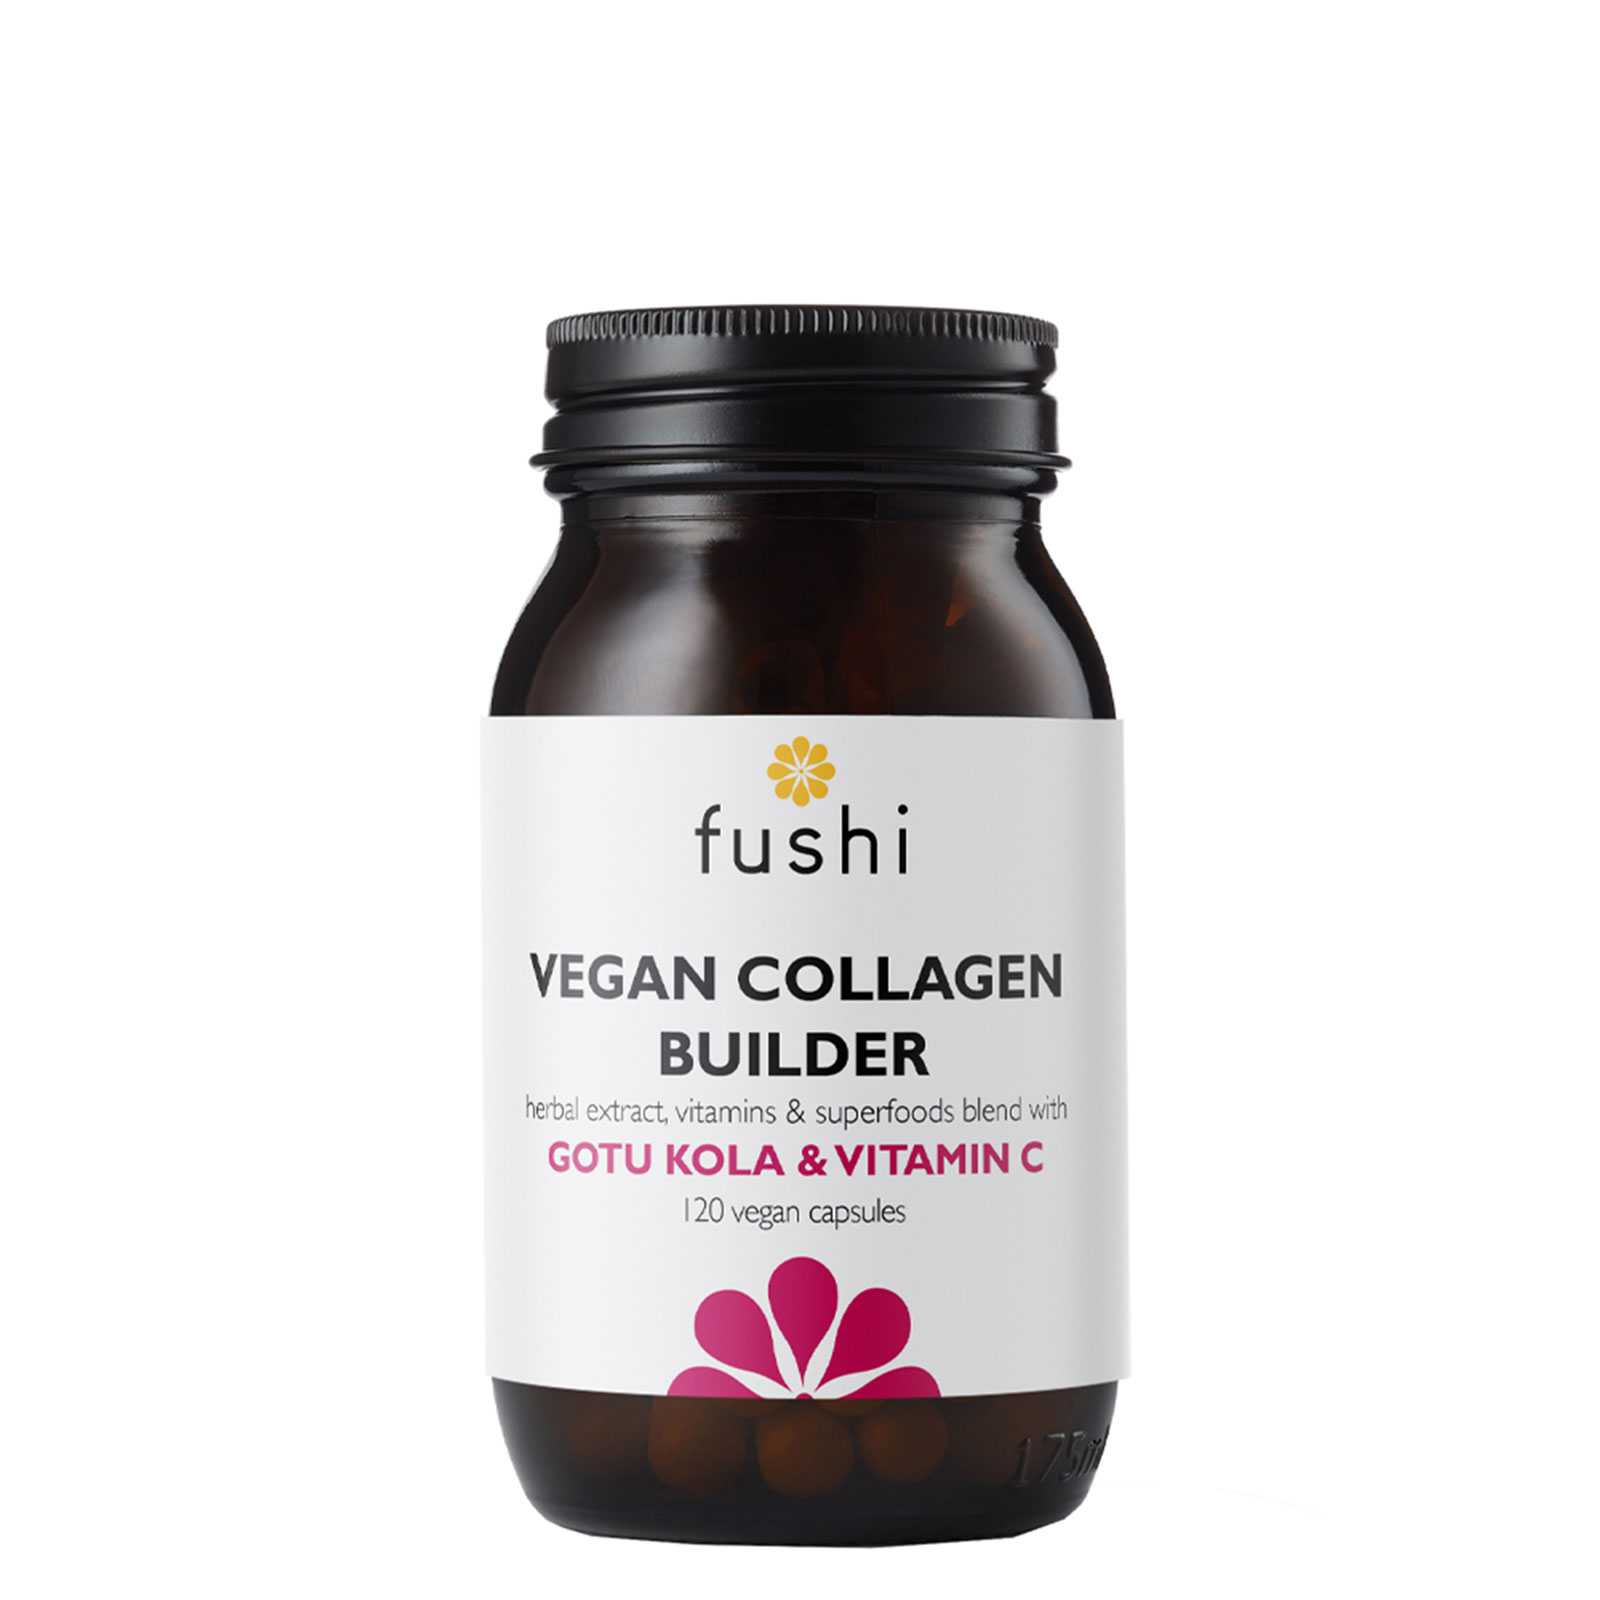 Fushi Vegan Collagen Builder 120 Capsules